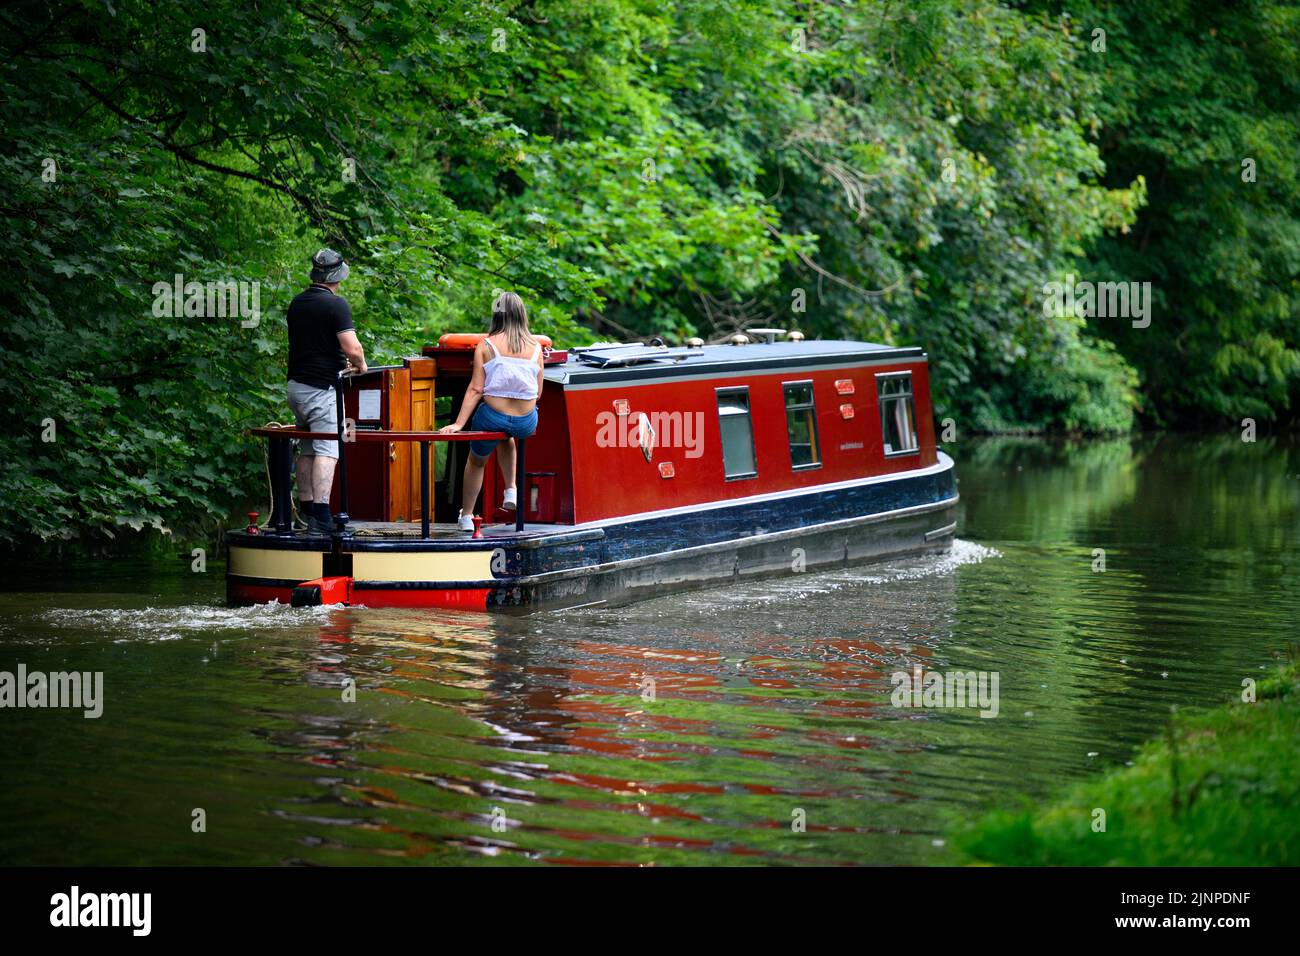 Couple se détendant sur un bateau étroit de style croiseur rouge se déplaçant lentement le long de la campagne pittoresque Leeds Liverpool Canal - Bingley, West Yorkshire, Angleterre, Royaume-Uni. Banque D'Images